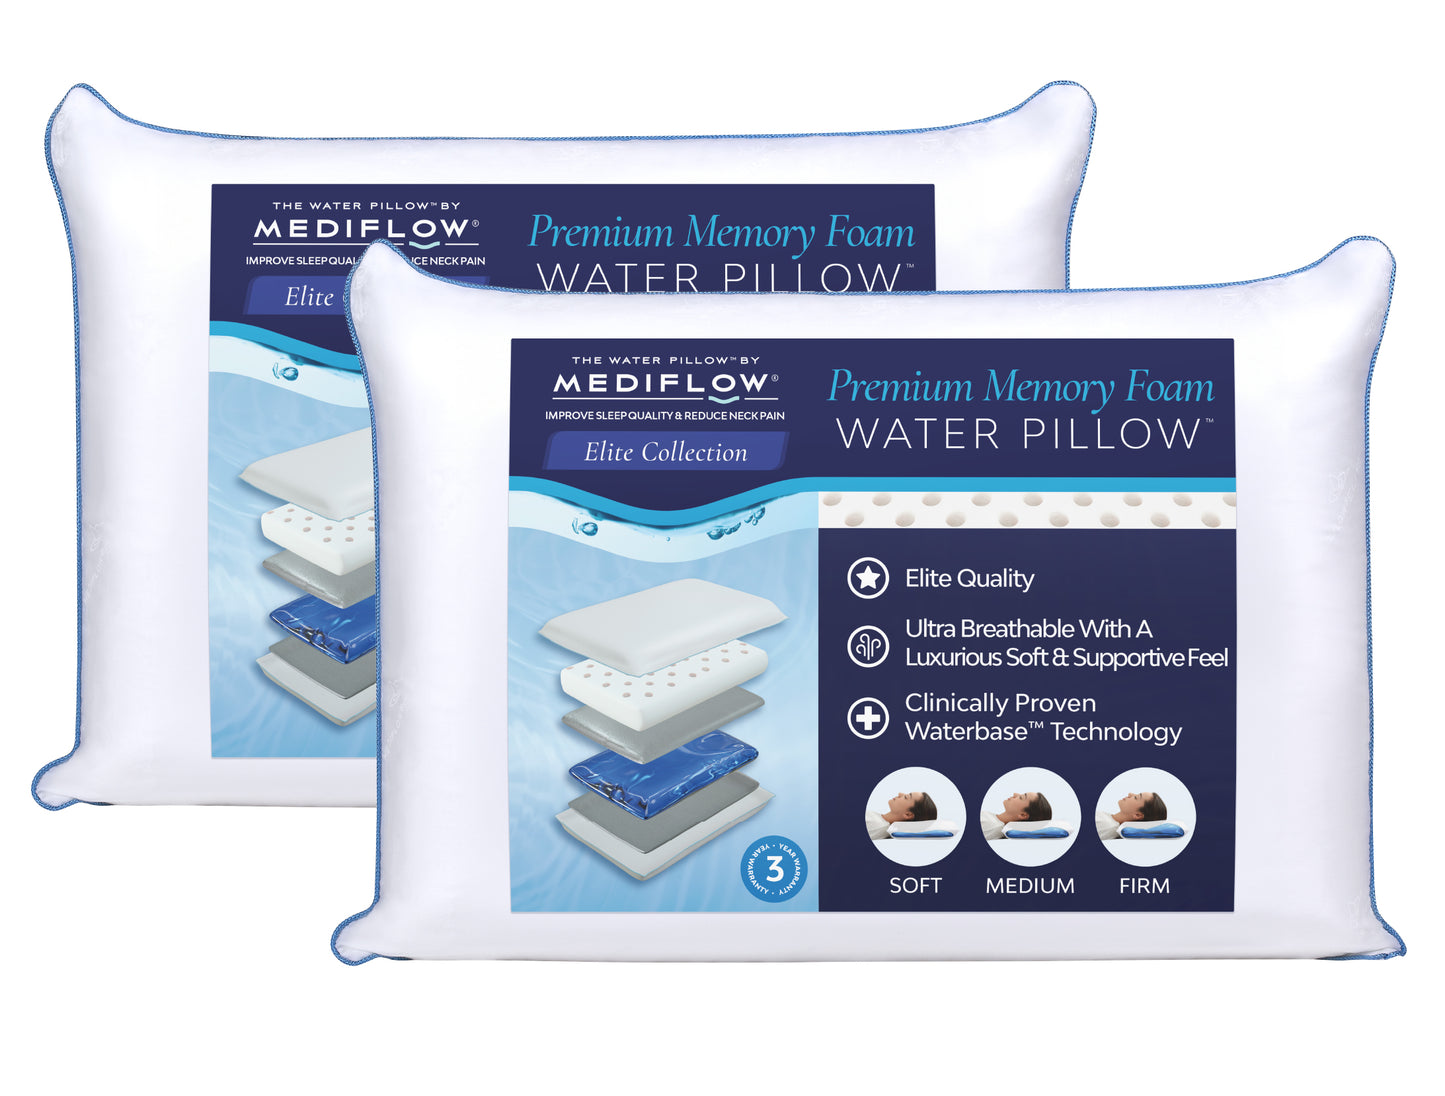 Mediflow Water Pillow - Elite Memory Foam